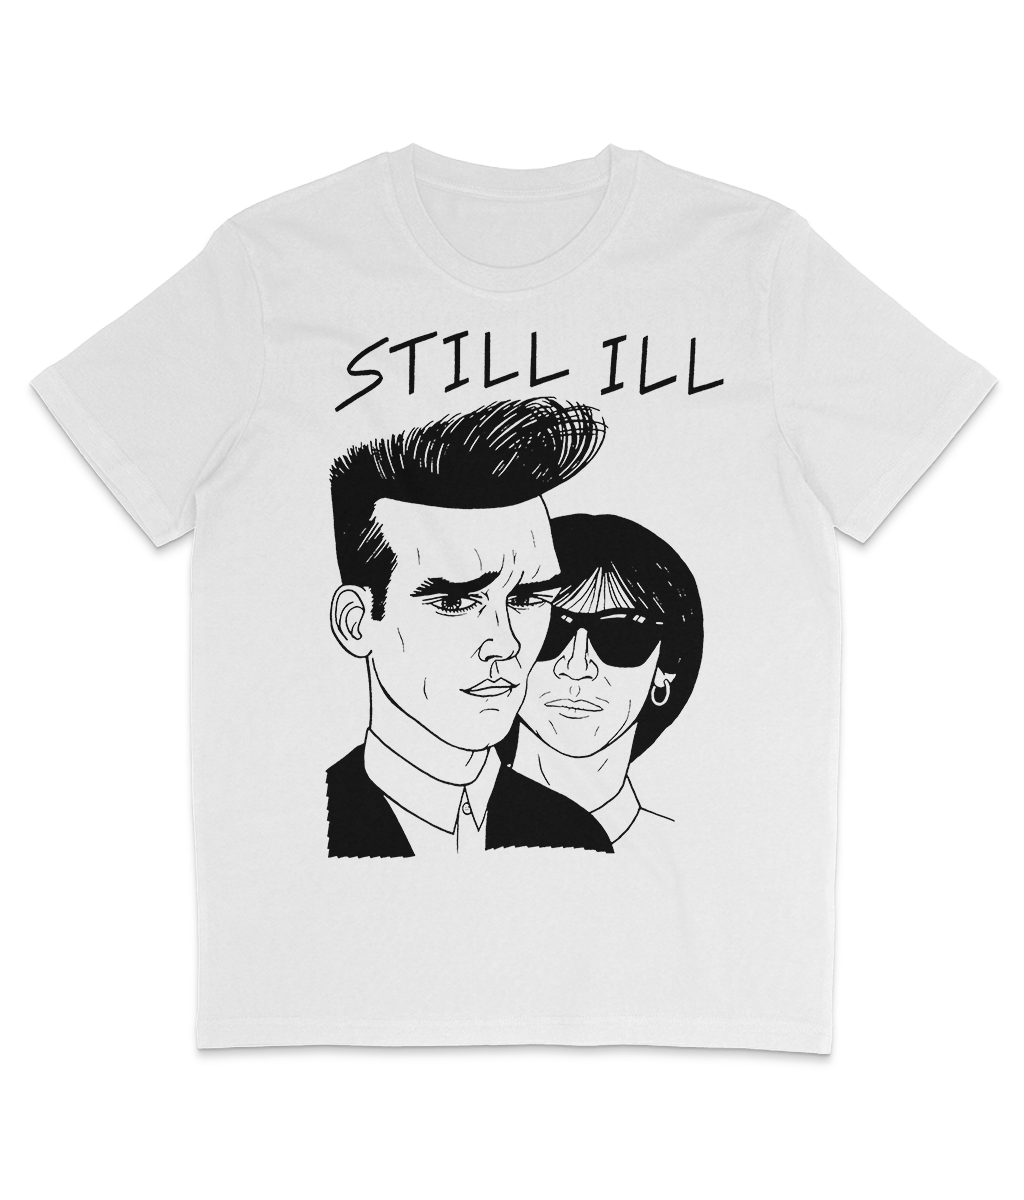 Morrissey & Marr - STILL ILL